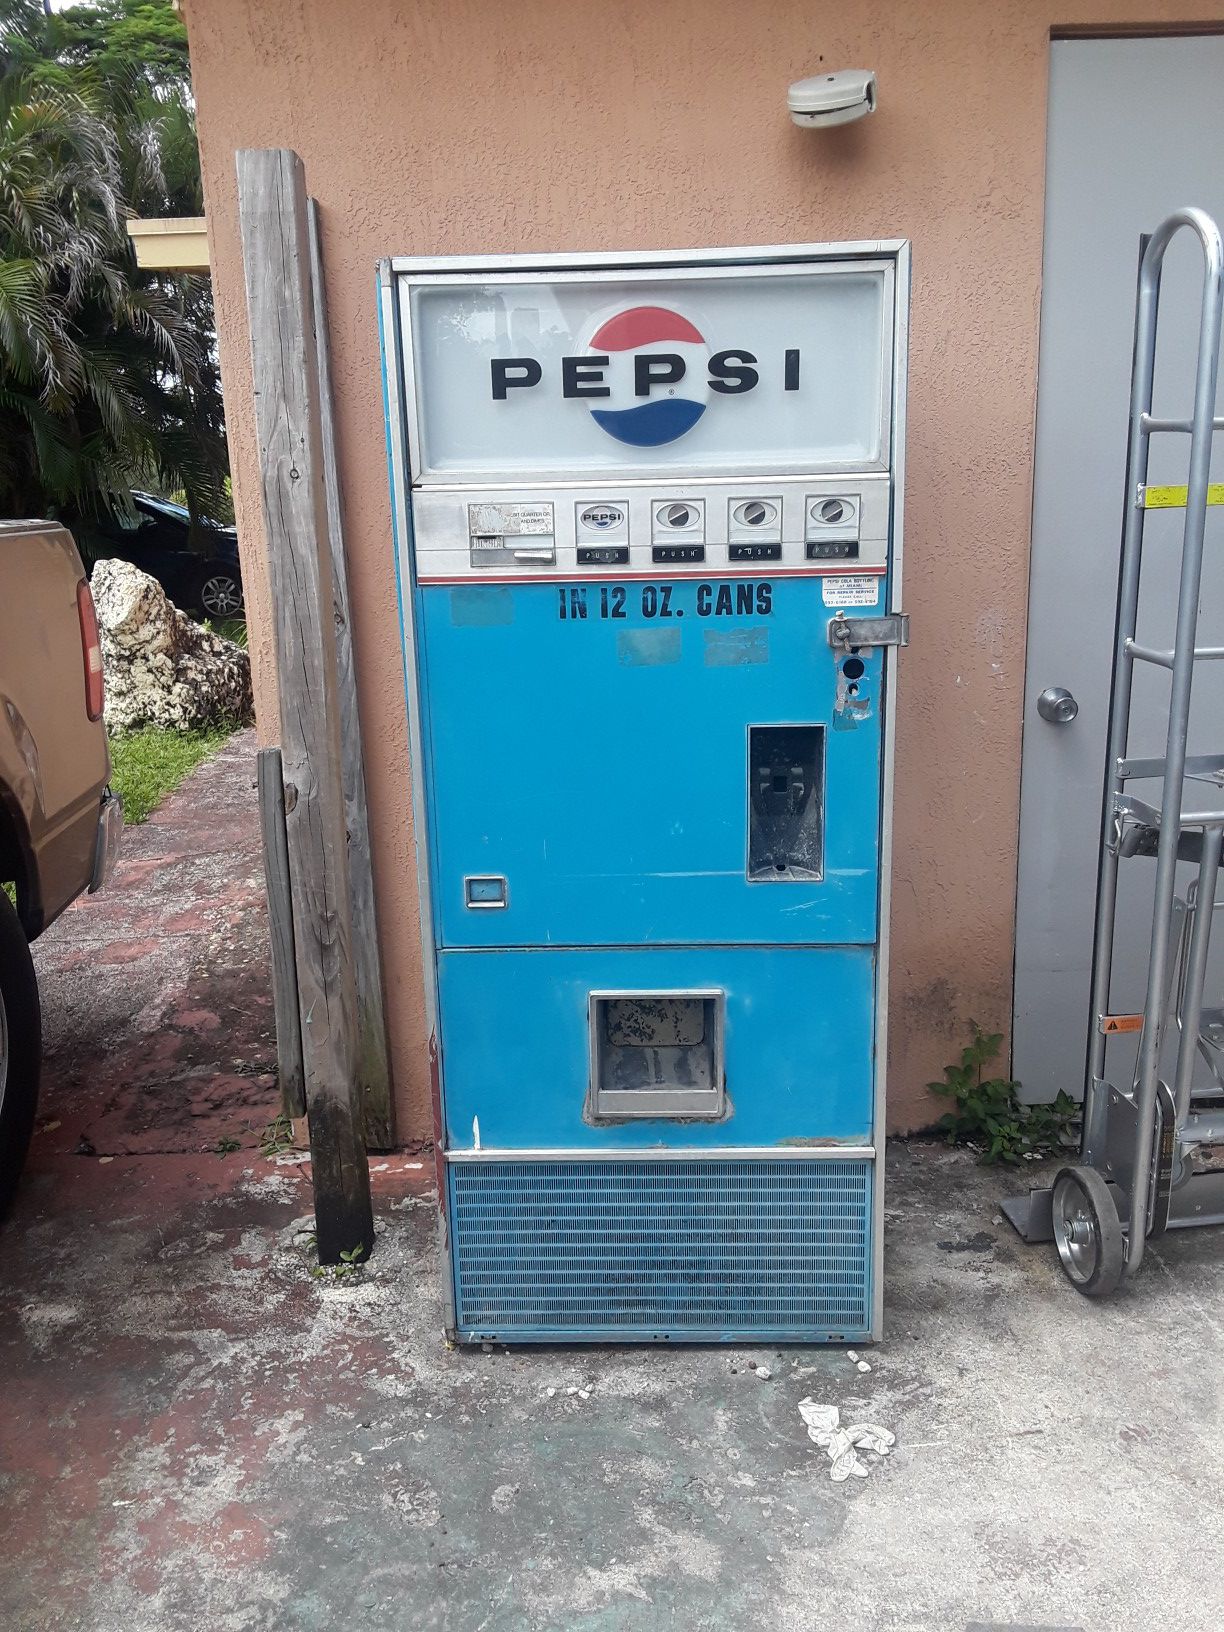 Antique pepsi Vending machine